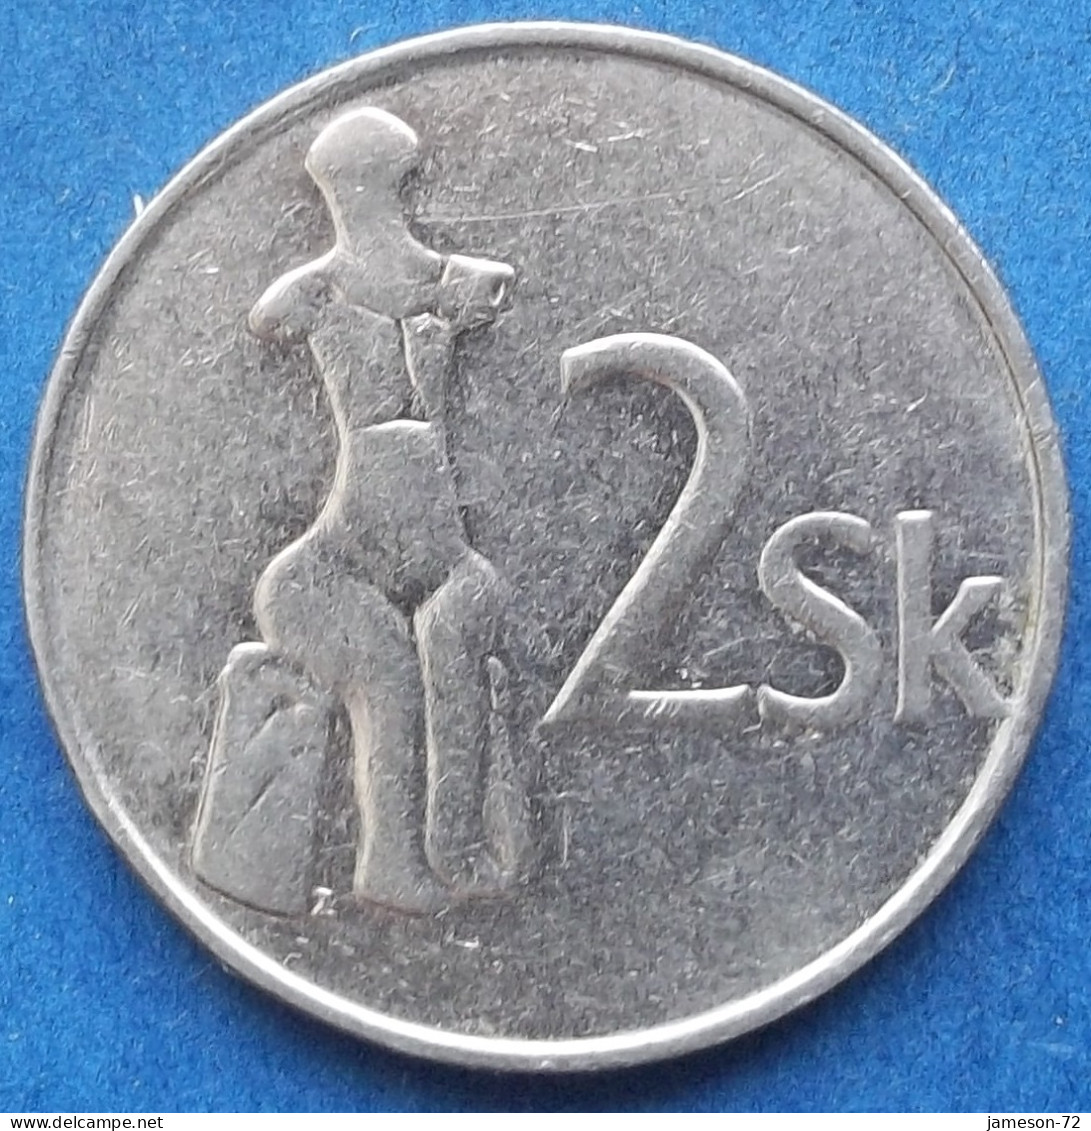 SLOVAKIA - 2 Koruna 1993 "Venus Of Nitriansky Hrádok" KM# 13 - Edelweiss Coins - Slovakia